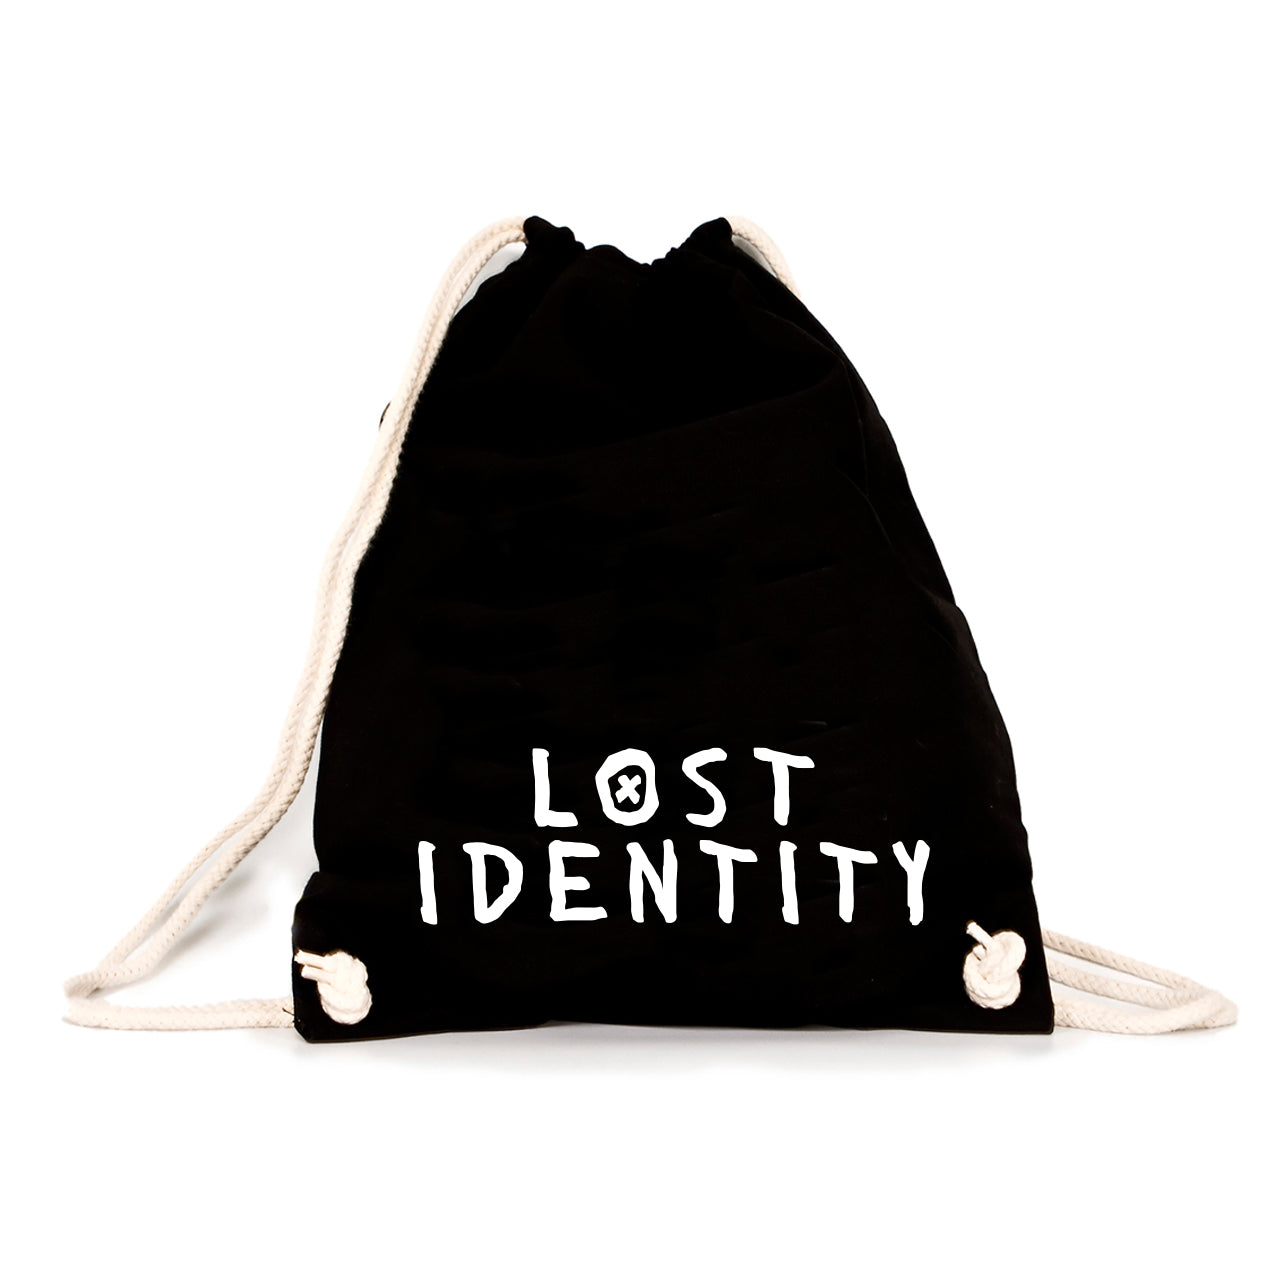 Lost Identity - Basic Gymbag